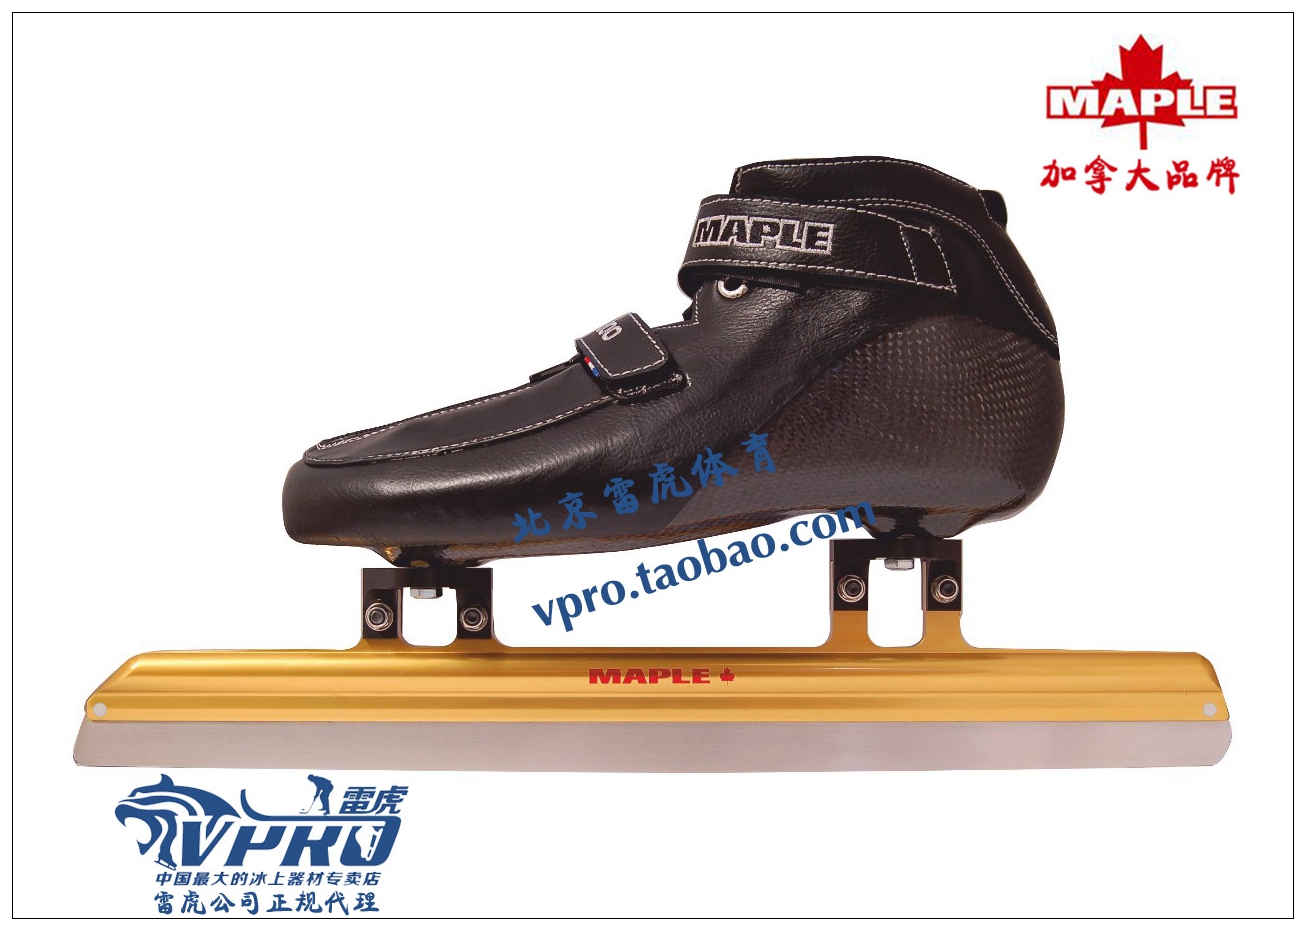 maple 加拿大 速滑冰刀鞋 顶级短道冰刀鞋 mst800冰鞋 gold冰刀